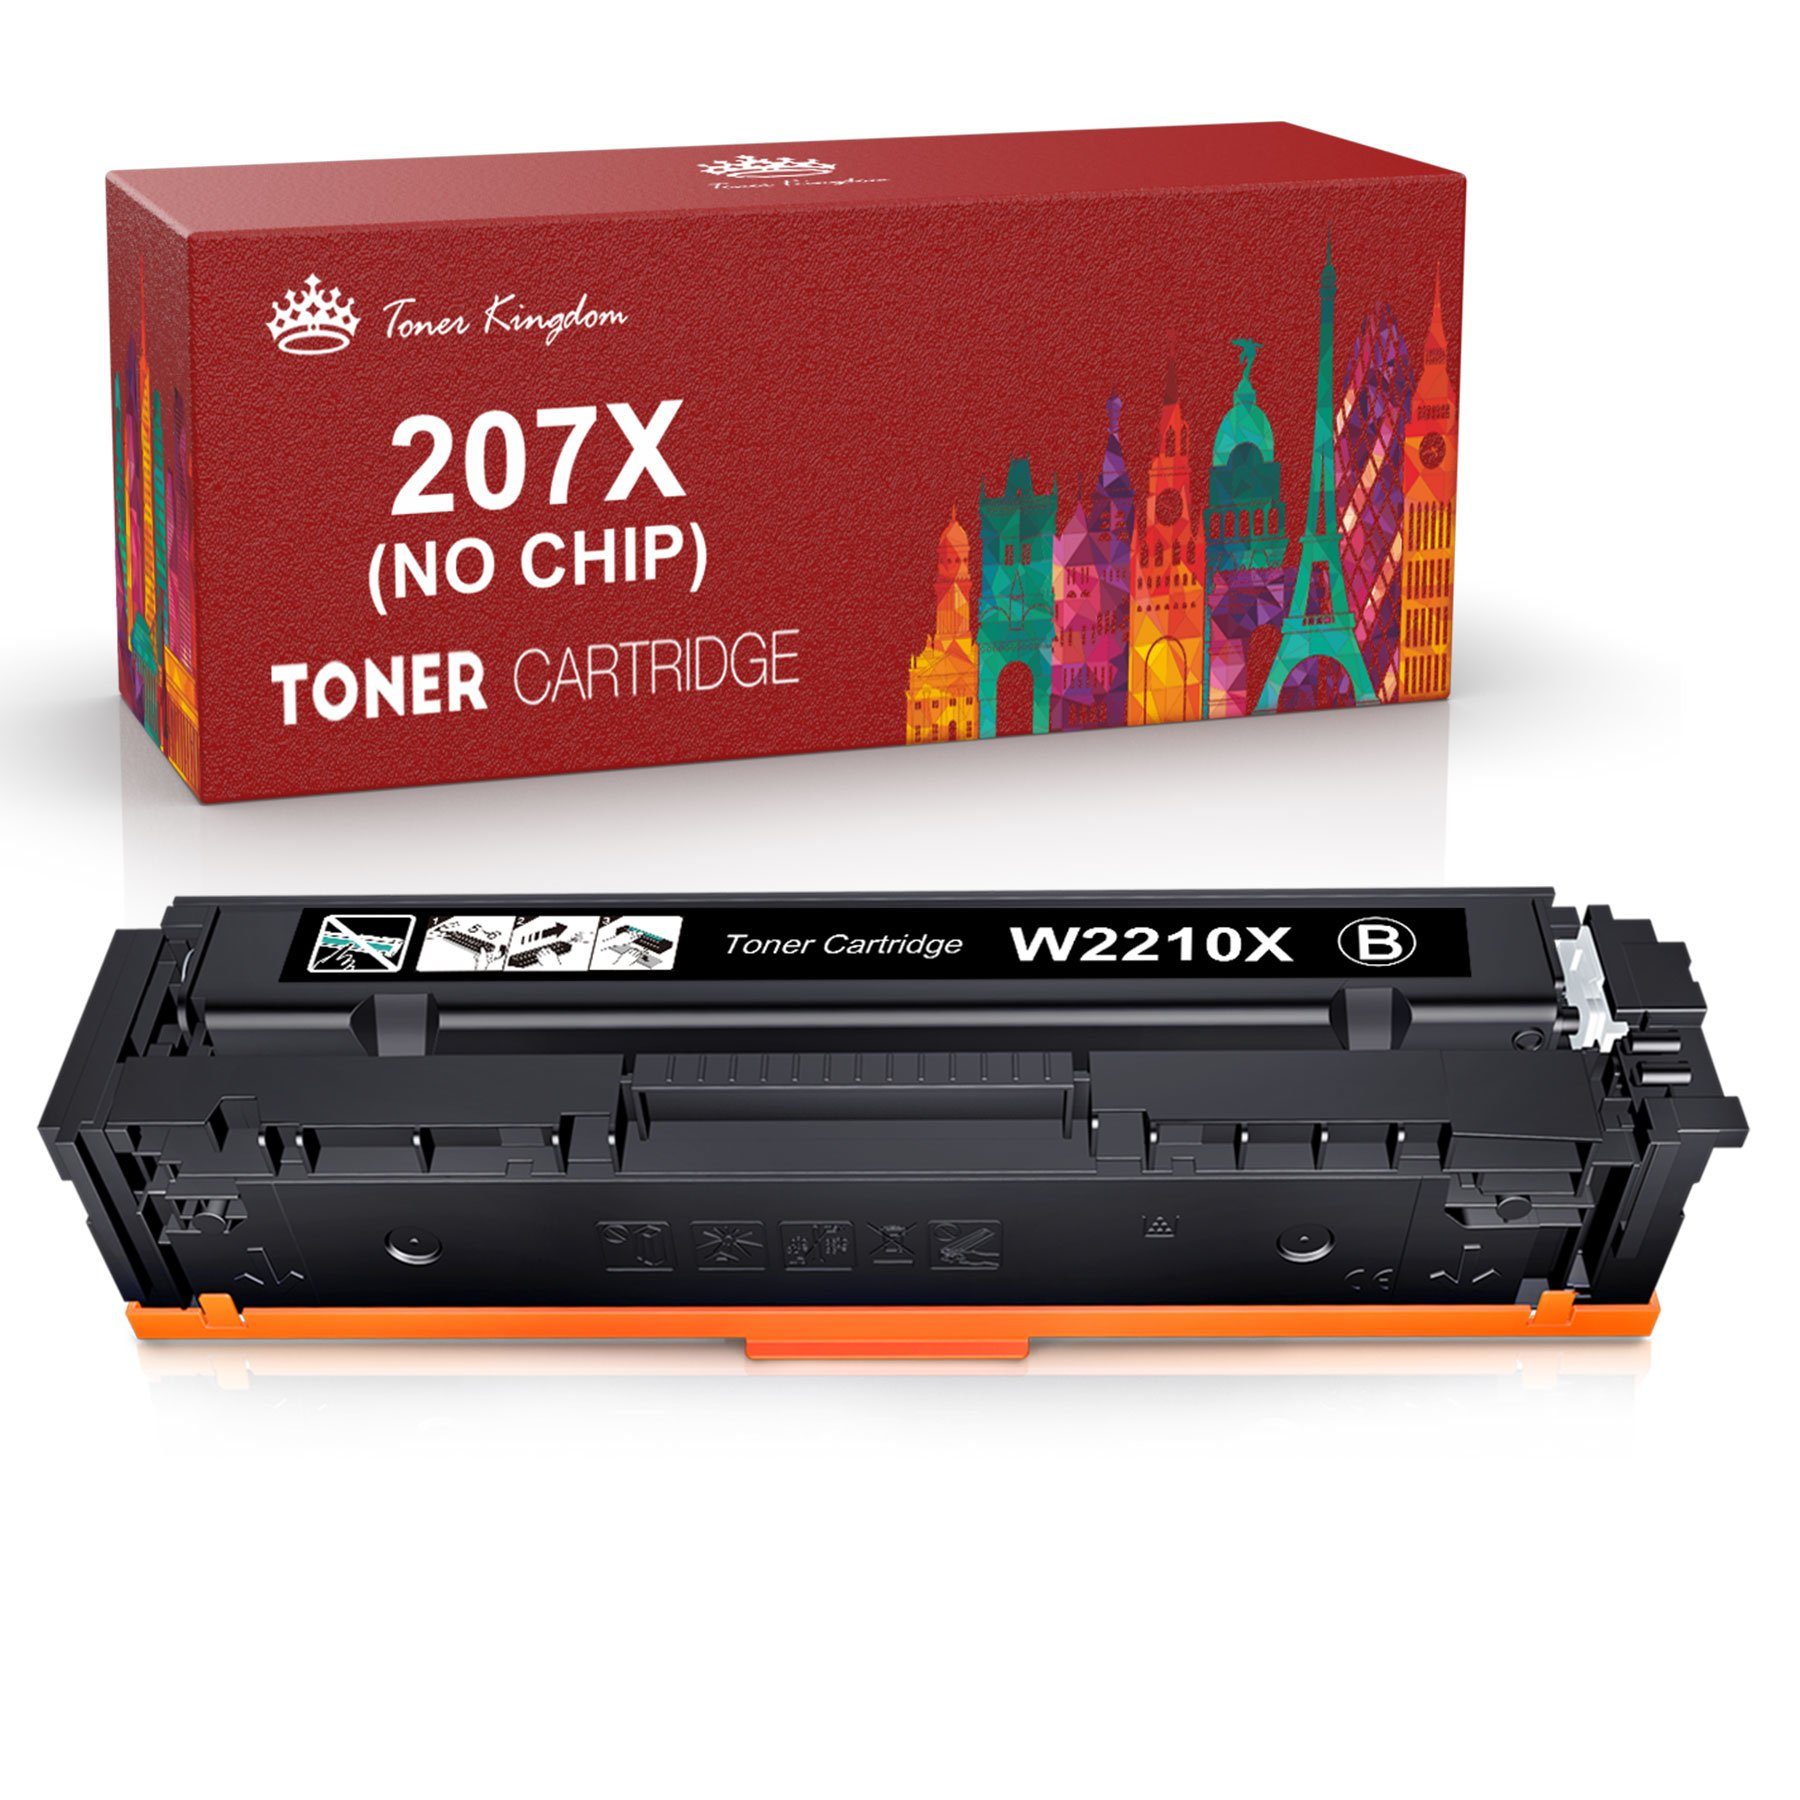 Toner Kingdom Tonerpatrone Ohne W2212X Chip 207X HP Color M255dw M283fdn W2210X für Laserjet Schwarz W2213X, 207A M255nw 207X W2211X Pro M282nw MFP M283fdw